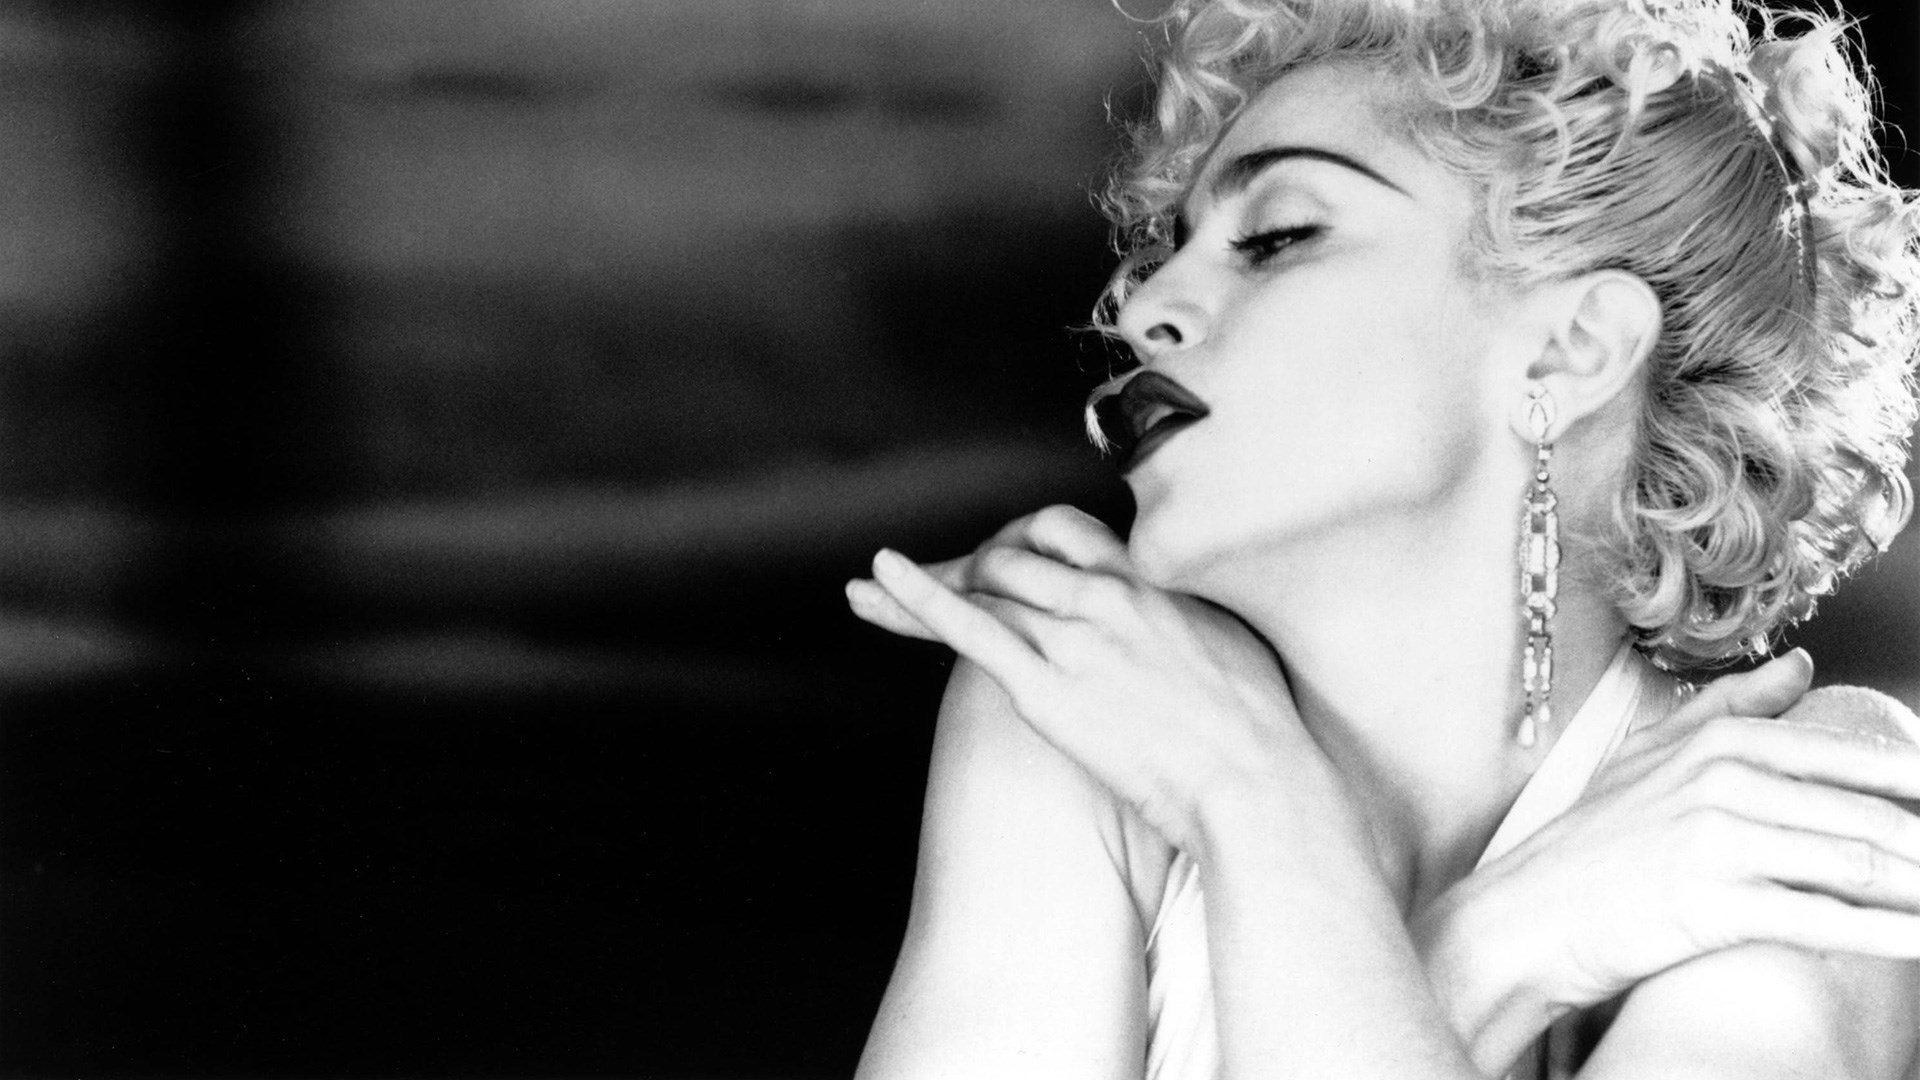 Madonna y Sam Smith se unen en una provocativa colaboración: "Vulgar"